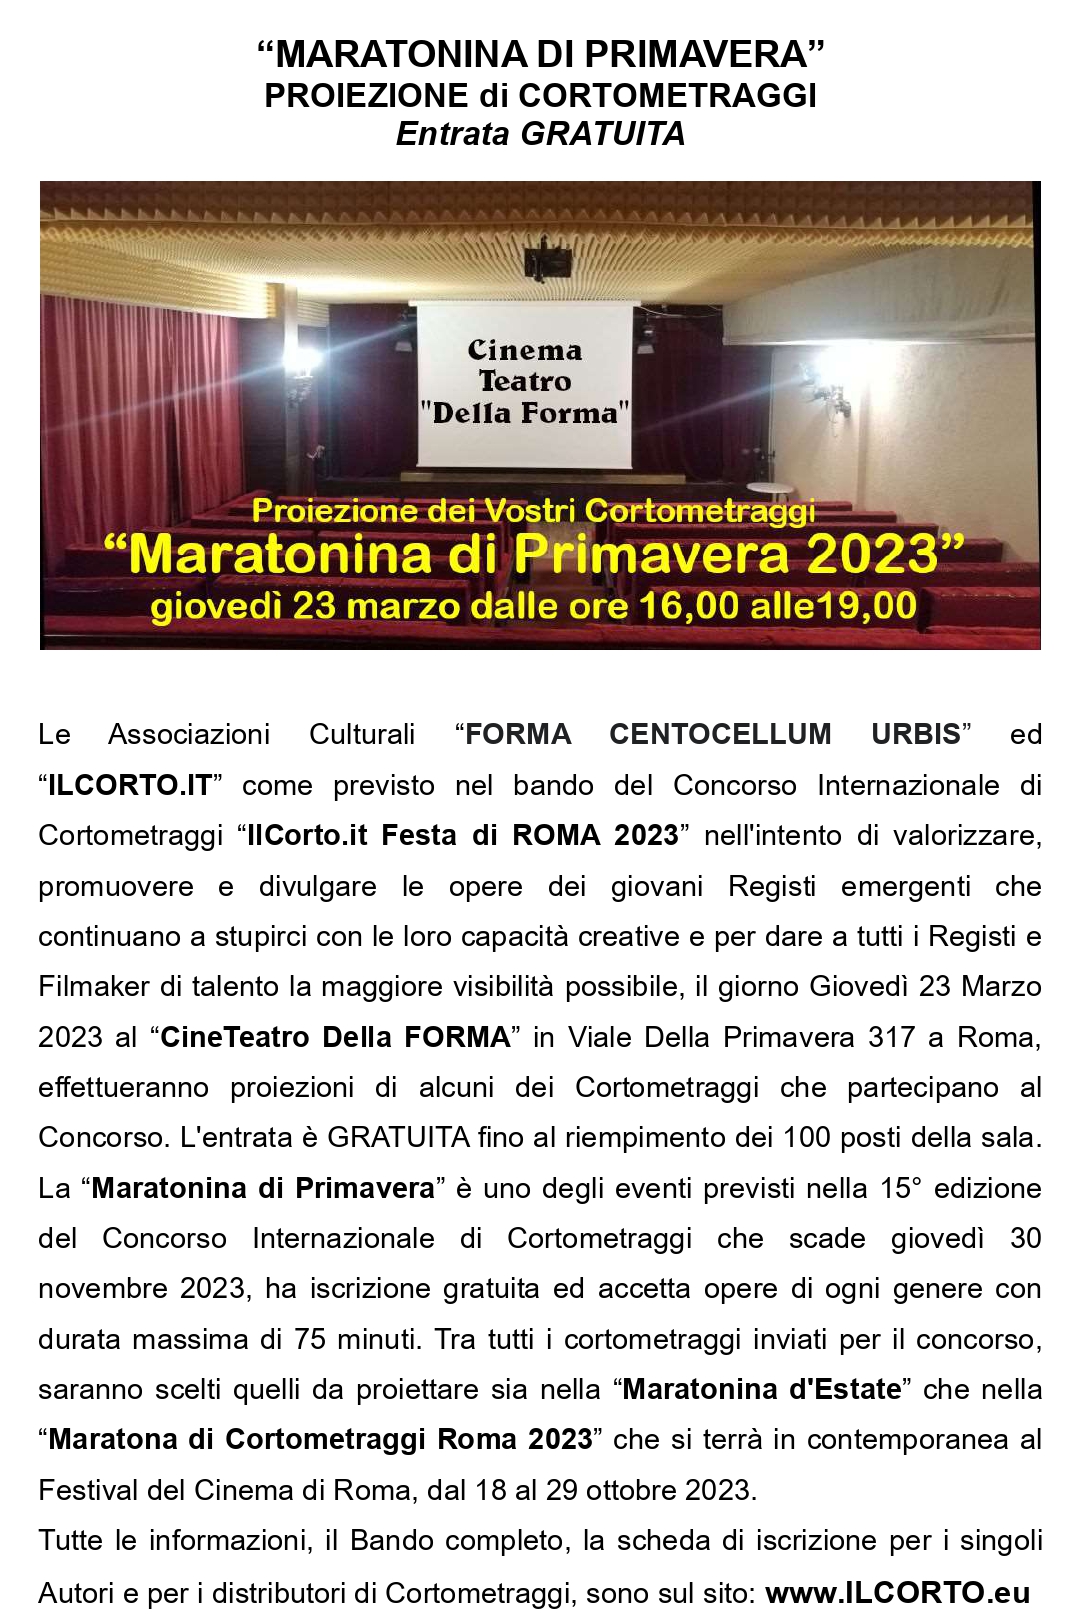 CINETEATRO della FORMA MARATONINA PRIMAVERA CORTOMETRAGGI 2023